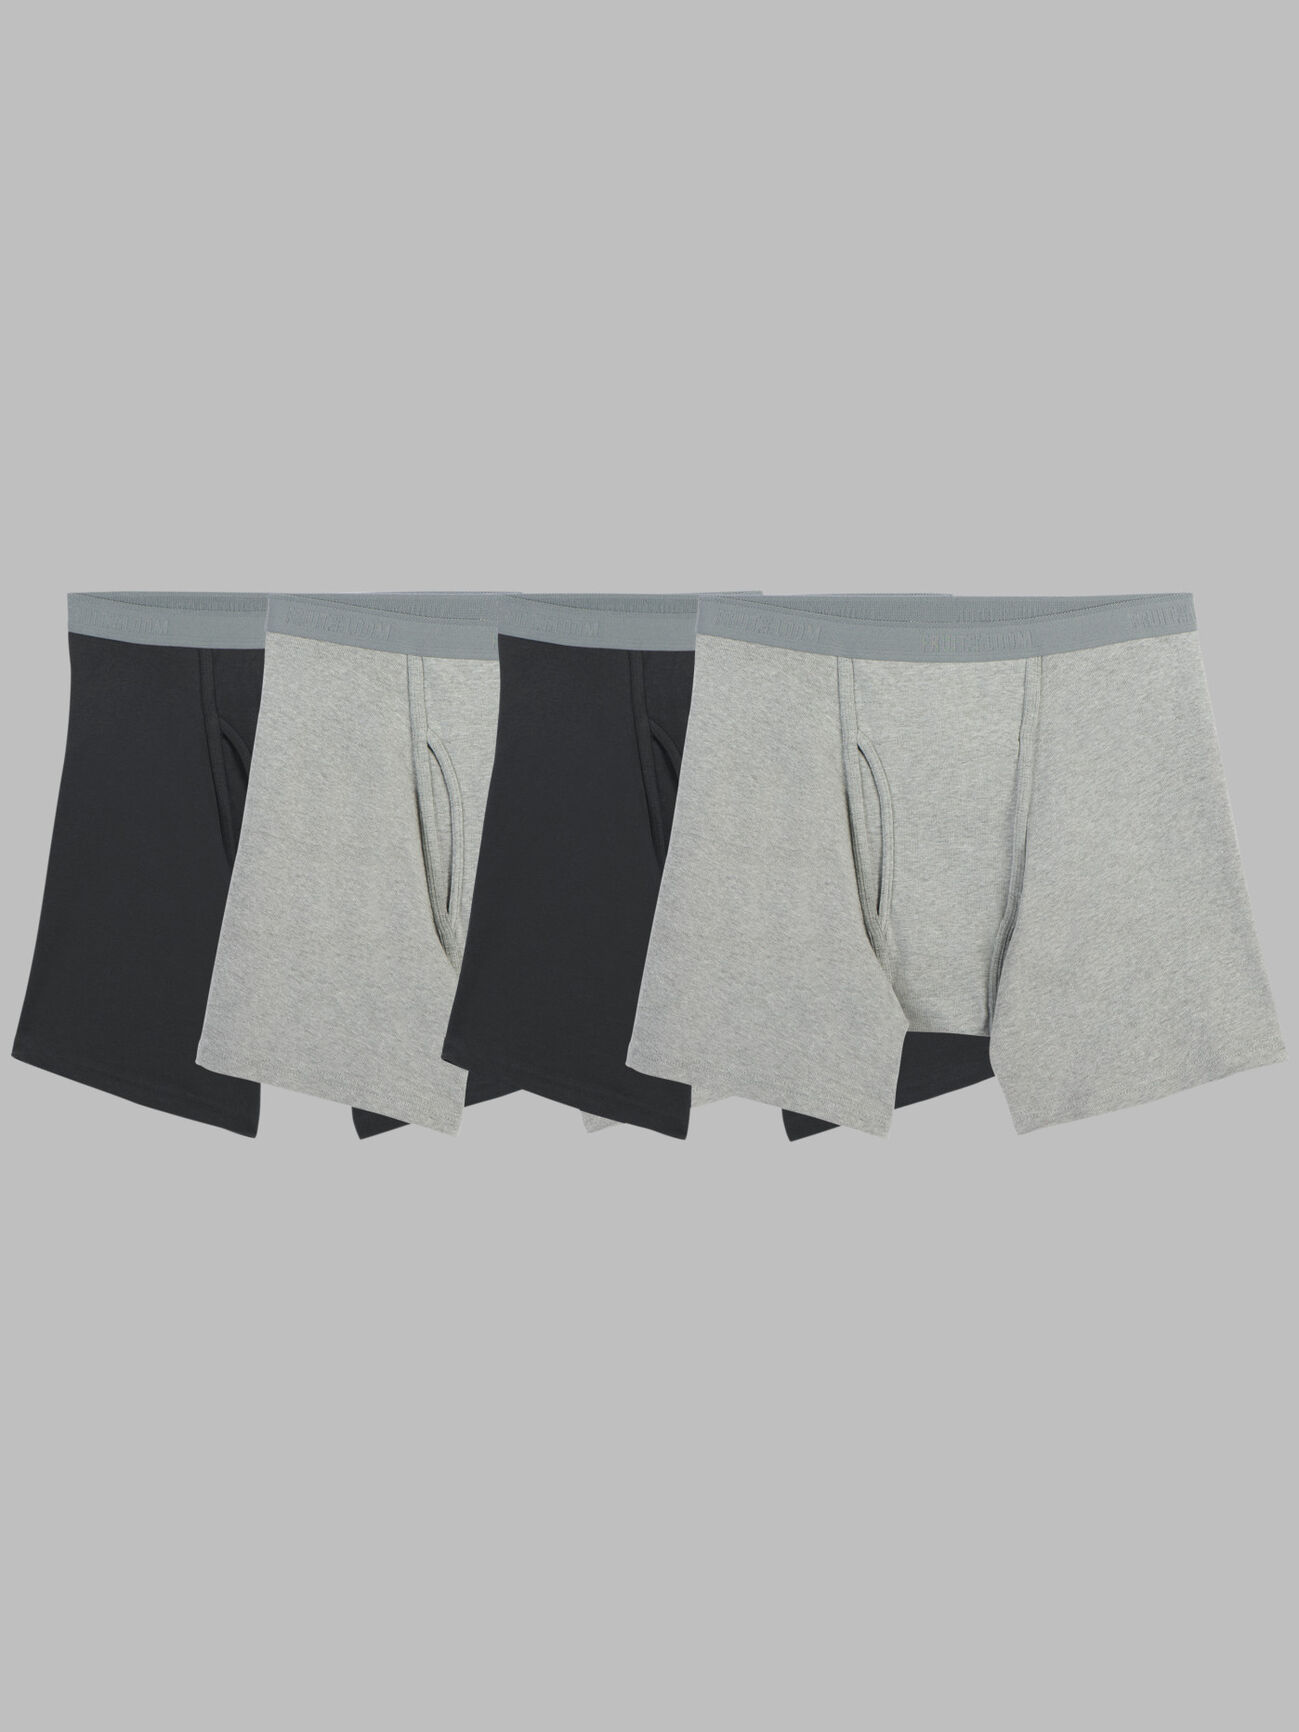 NEW Calvin Klein Men's Essential Monogram Cotton Trunks Underwear